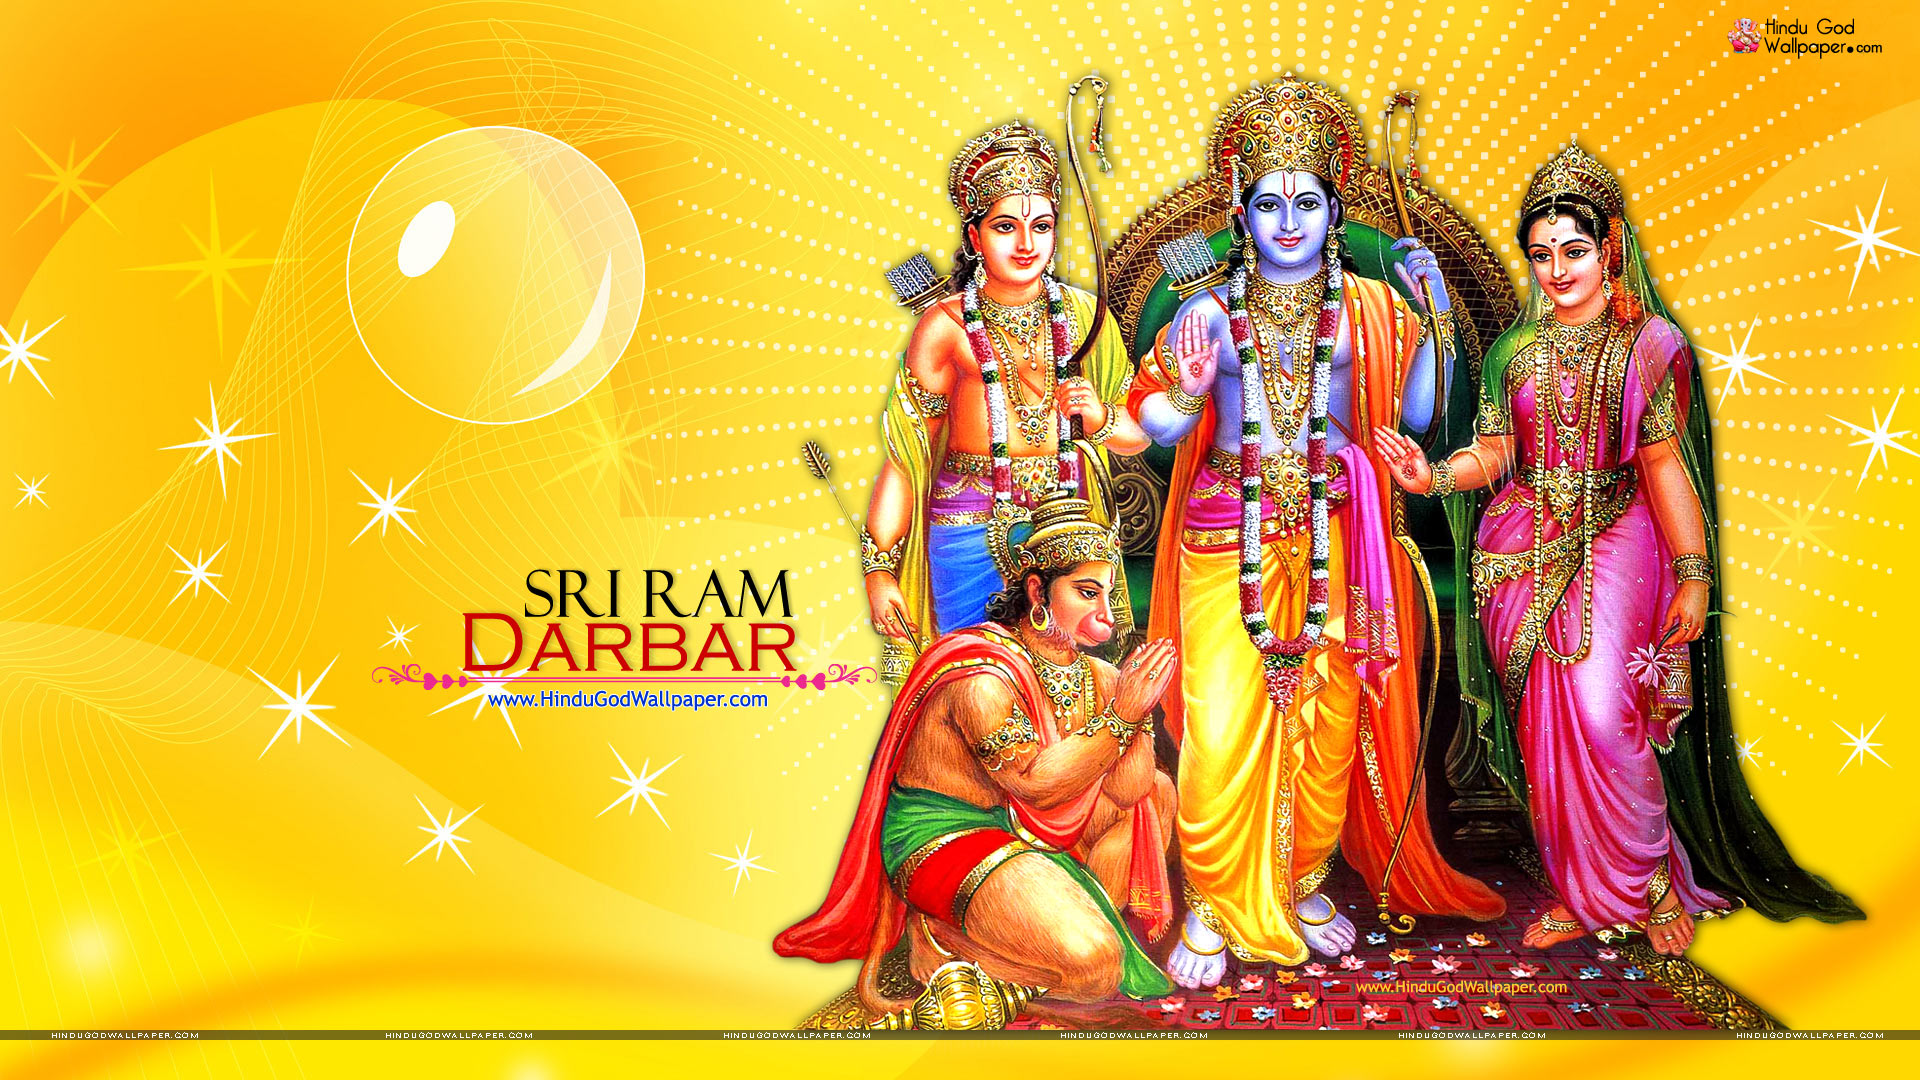 Shri Ram Darbar Wallpapers HD Free Download